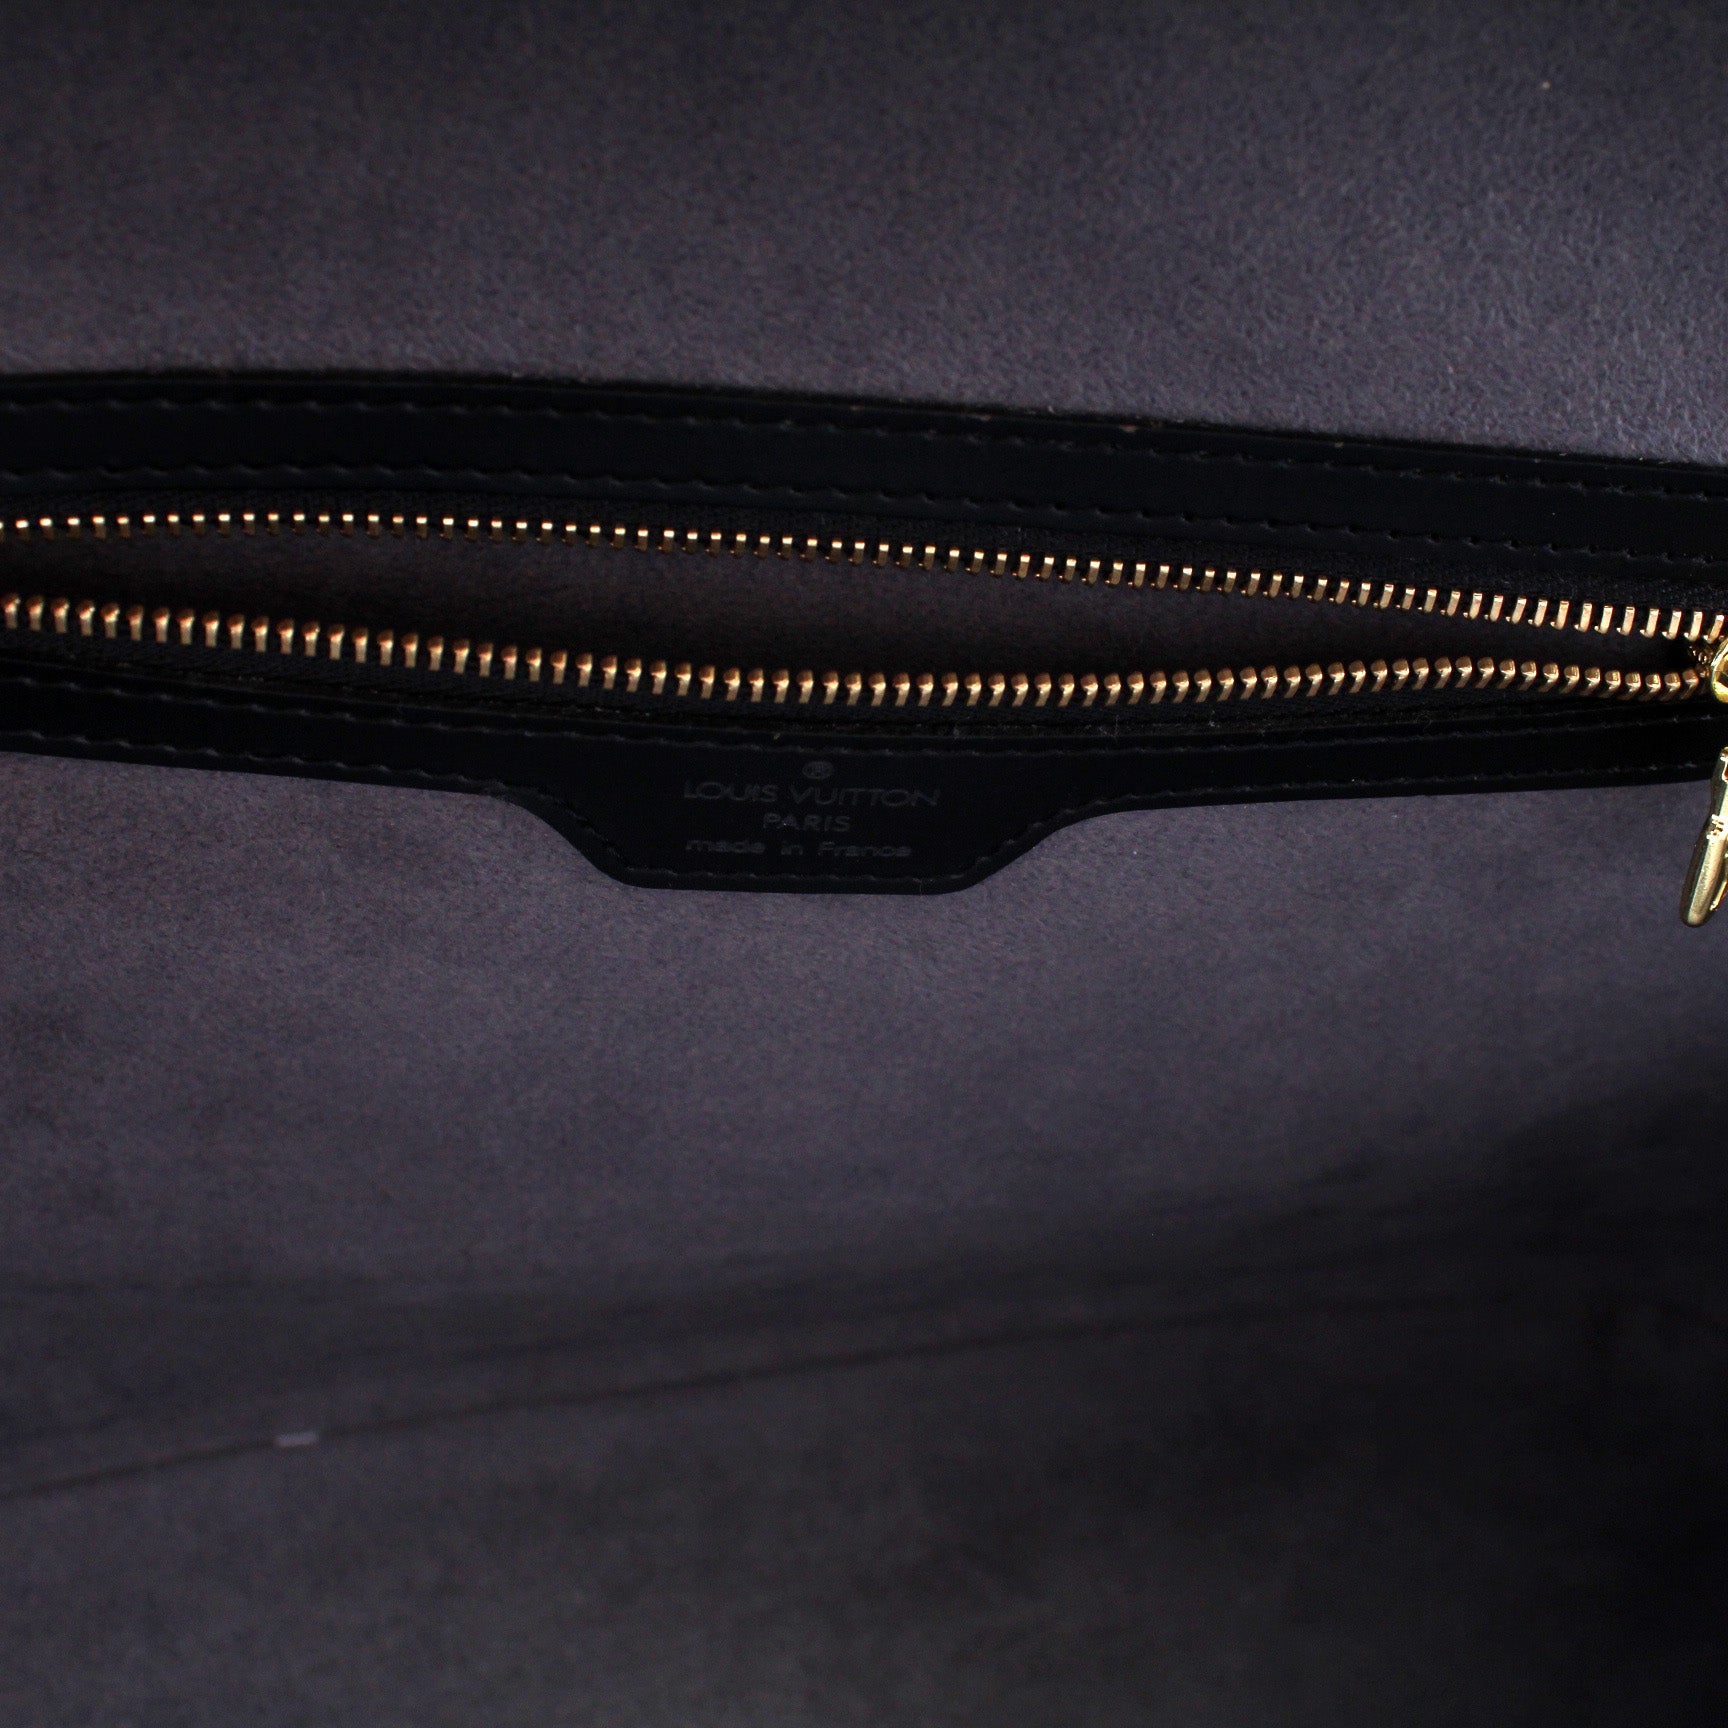 Louis-Vuitton-Epi-Lussac-Shoulder-Bag-Noir-Black-M52282 – dct